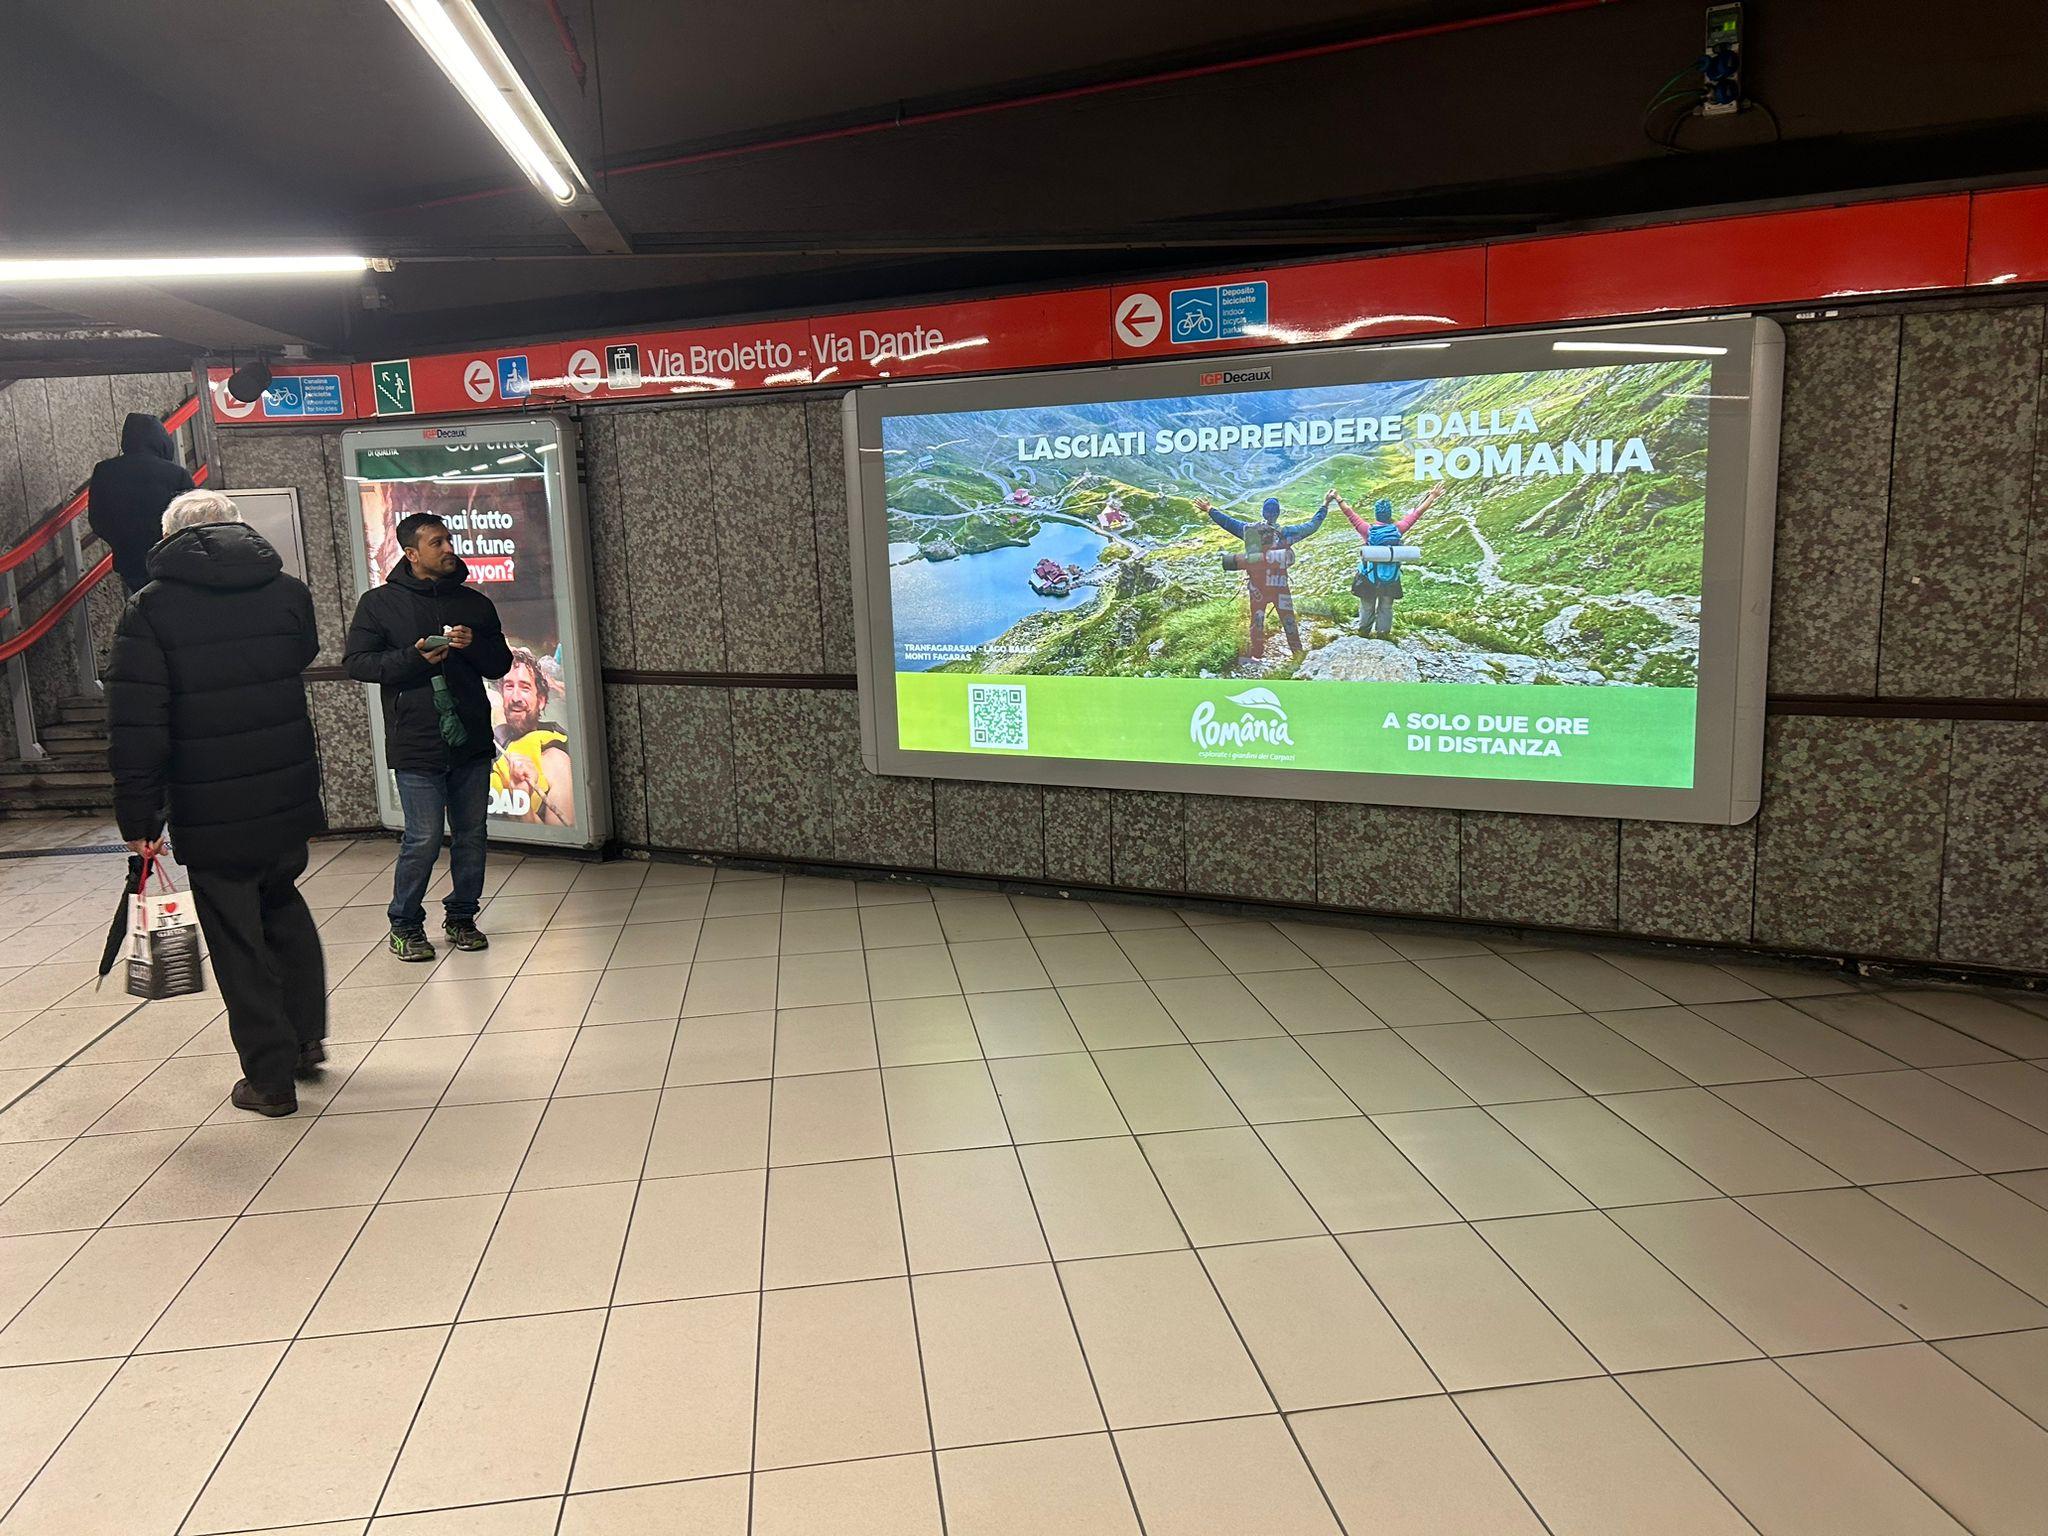 "Lasă-te surprins de România!" O nouă campanie de promovare a ţării în două oraşe-cheie din Europa. Imagini spectaculoase, afişate la metrou şi pe autobuze